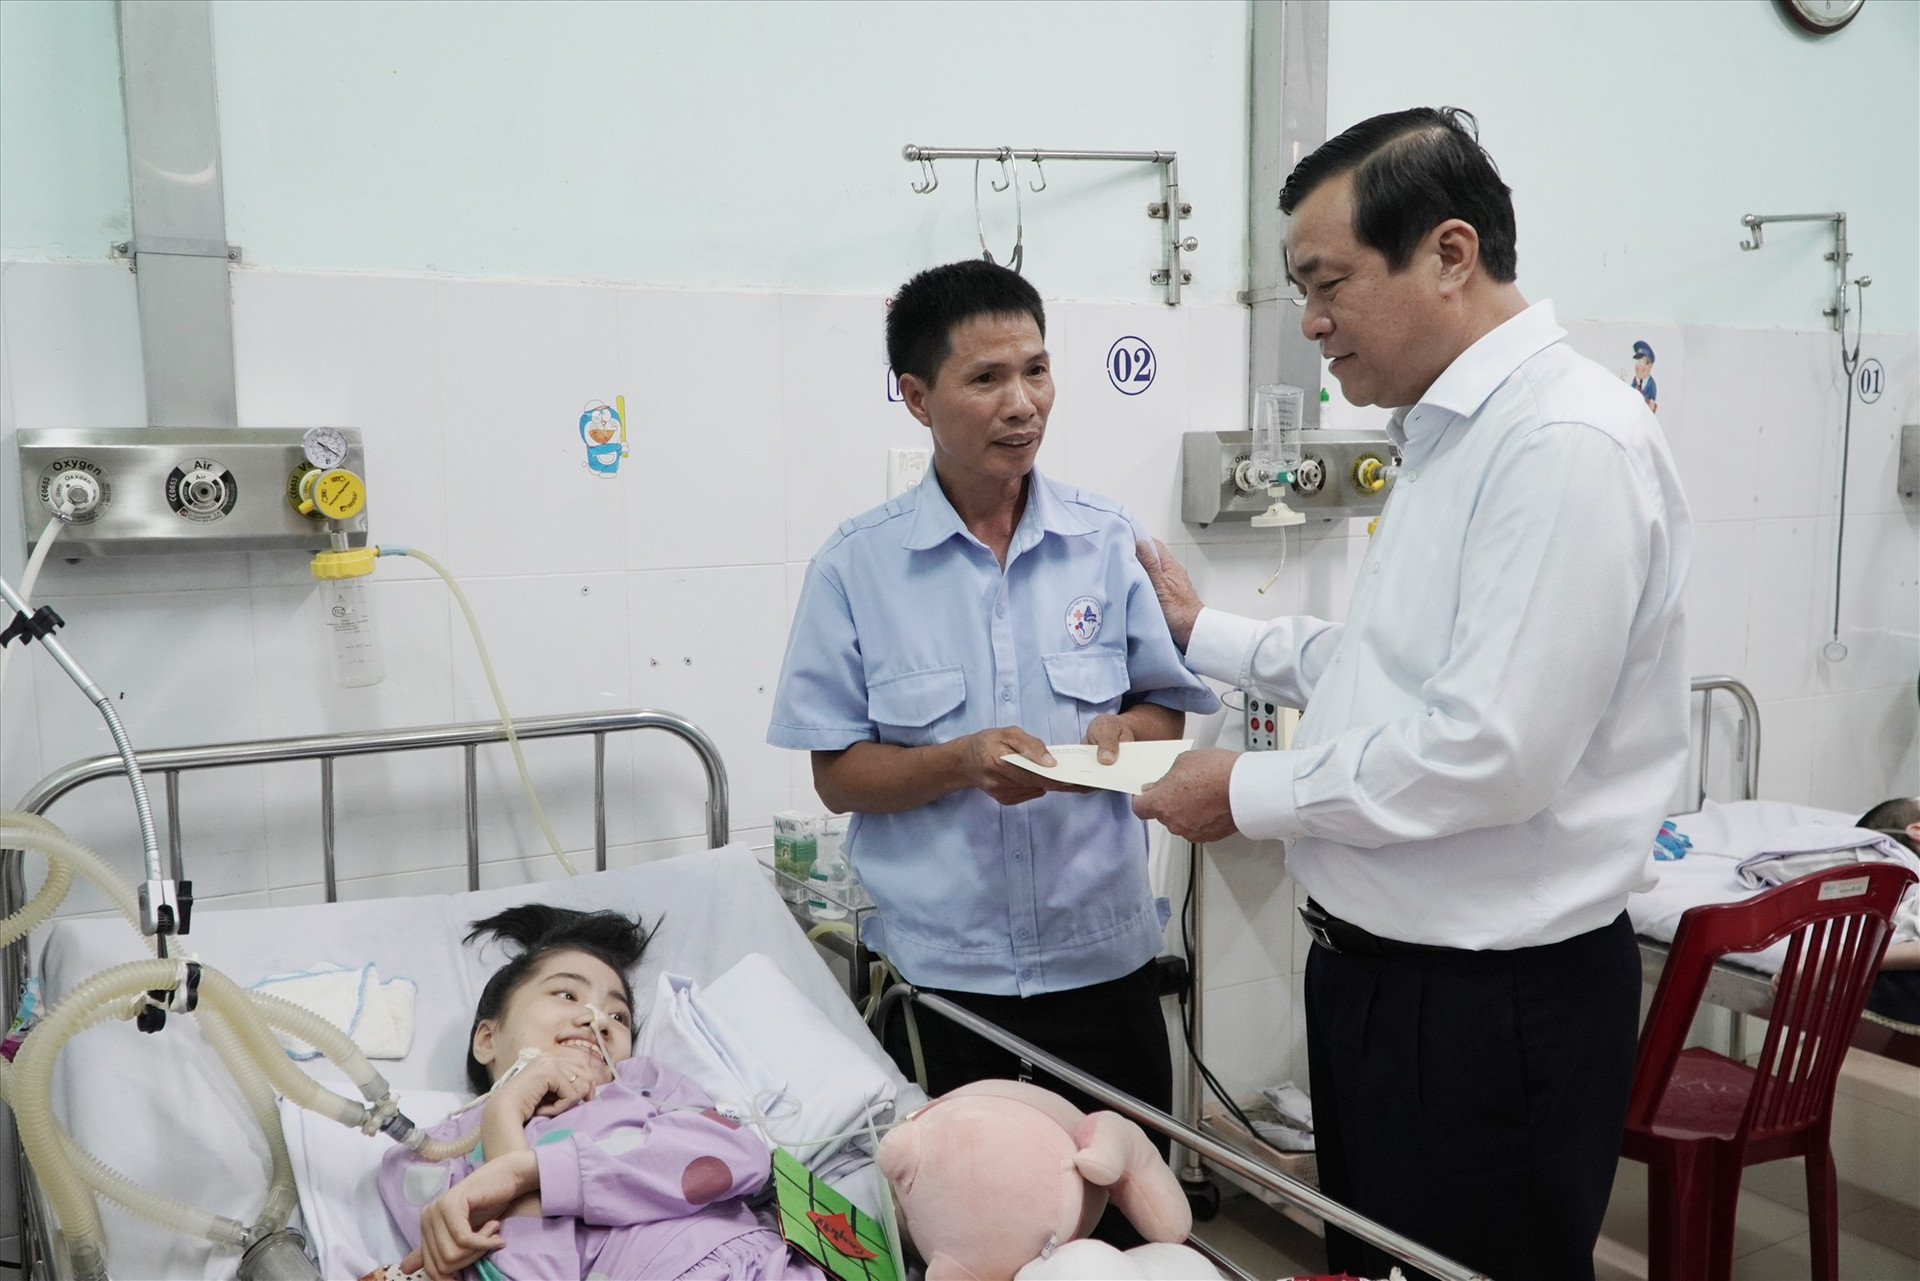 Bí thư Tỉnh ủy Phan Việt Cường tặng quà cho người nhà bệnh nhi tại Bệnh viện Phụ sản - Nhi Quảng Nam nhân dịp năm mới. Ảnh: PHAN VINH